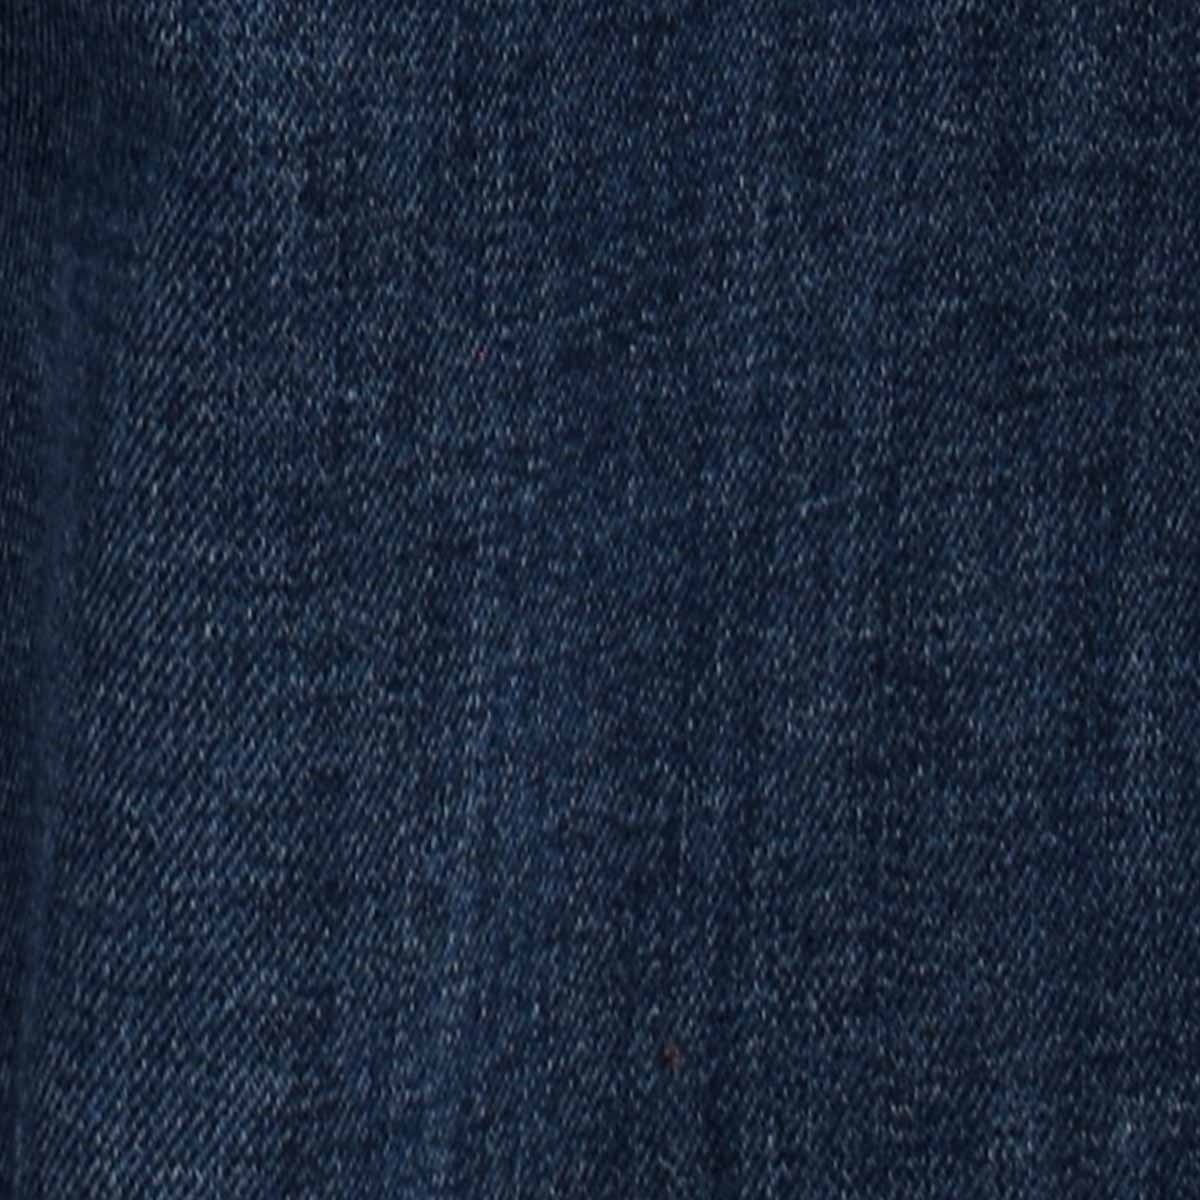 Jeans Skinny Índigo para Hombre Modelo Elo 61119Sc74 Lee